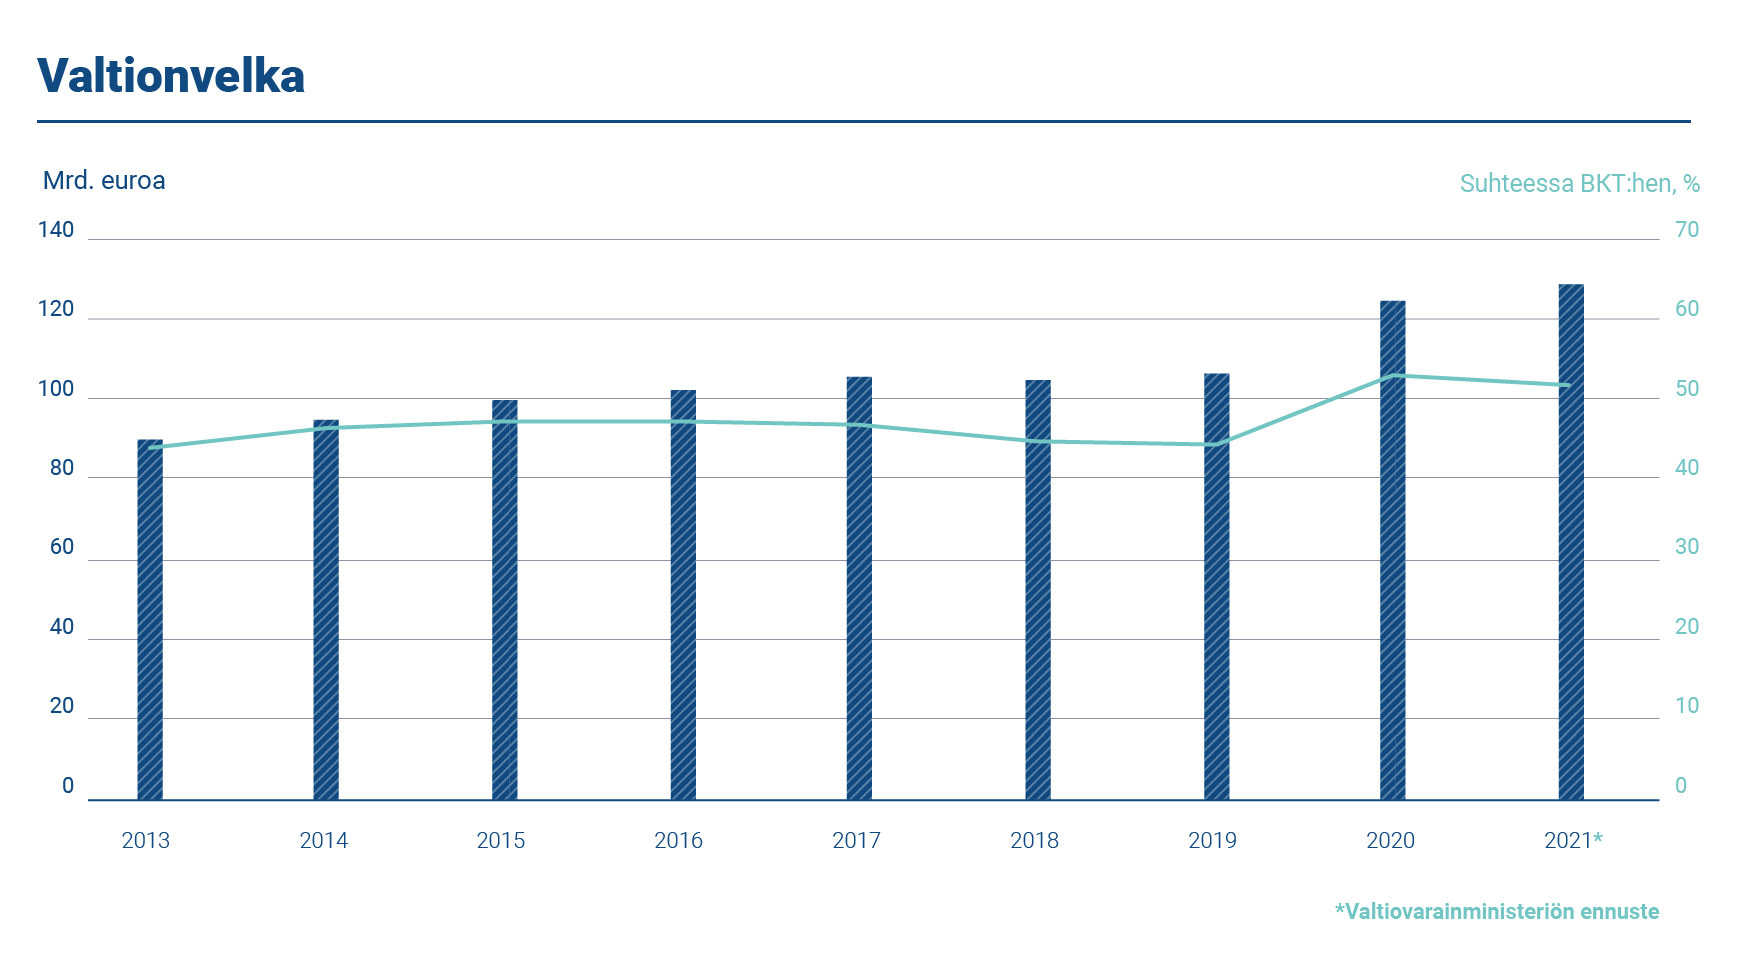 Kaaviossa esitetään Suomen valtionvelan määrä ja suhde bruttokansantuotteeseen vuosina 2013–2021. Valtionvelka oli 128,70 miljardia euroa vuoden 2021 lopussa. Velan suhde bruttokansantuotteeseen oli 51,80 prosenttia.